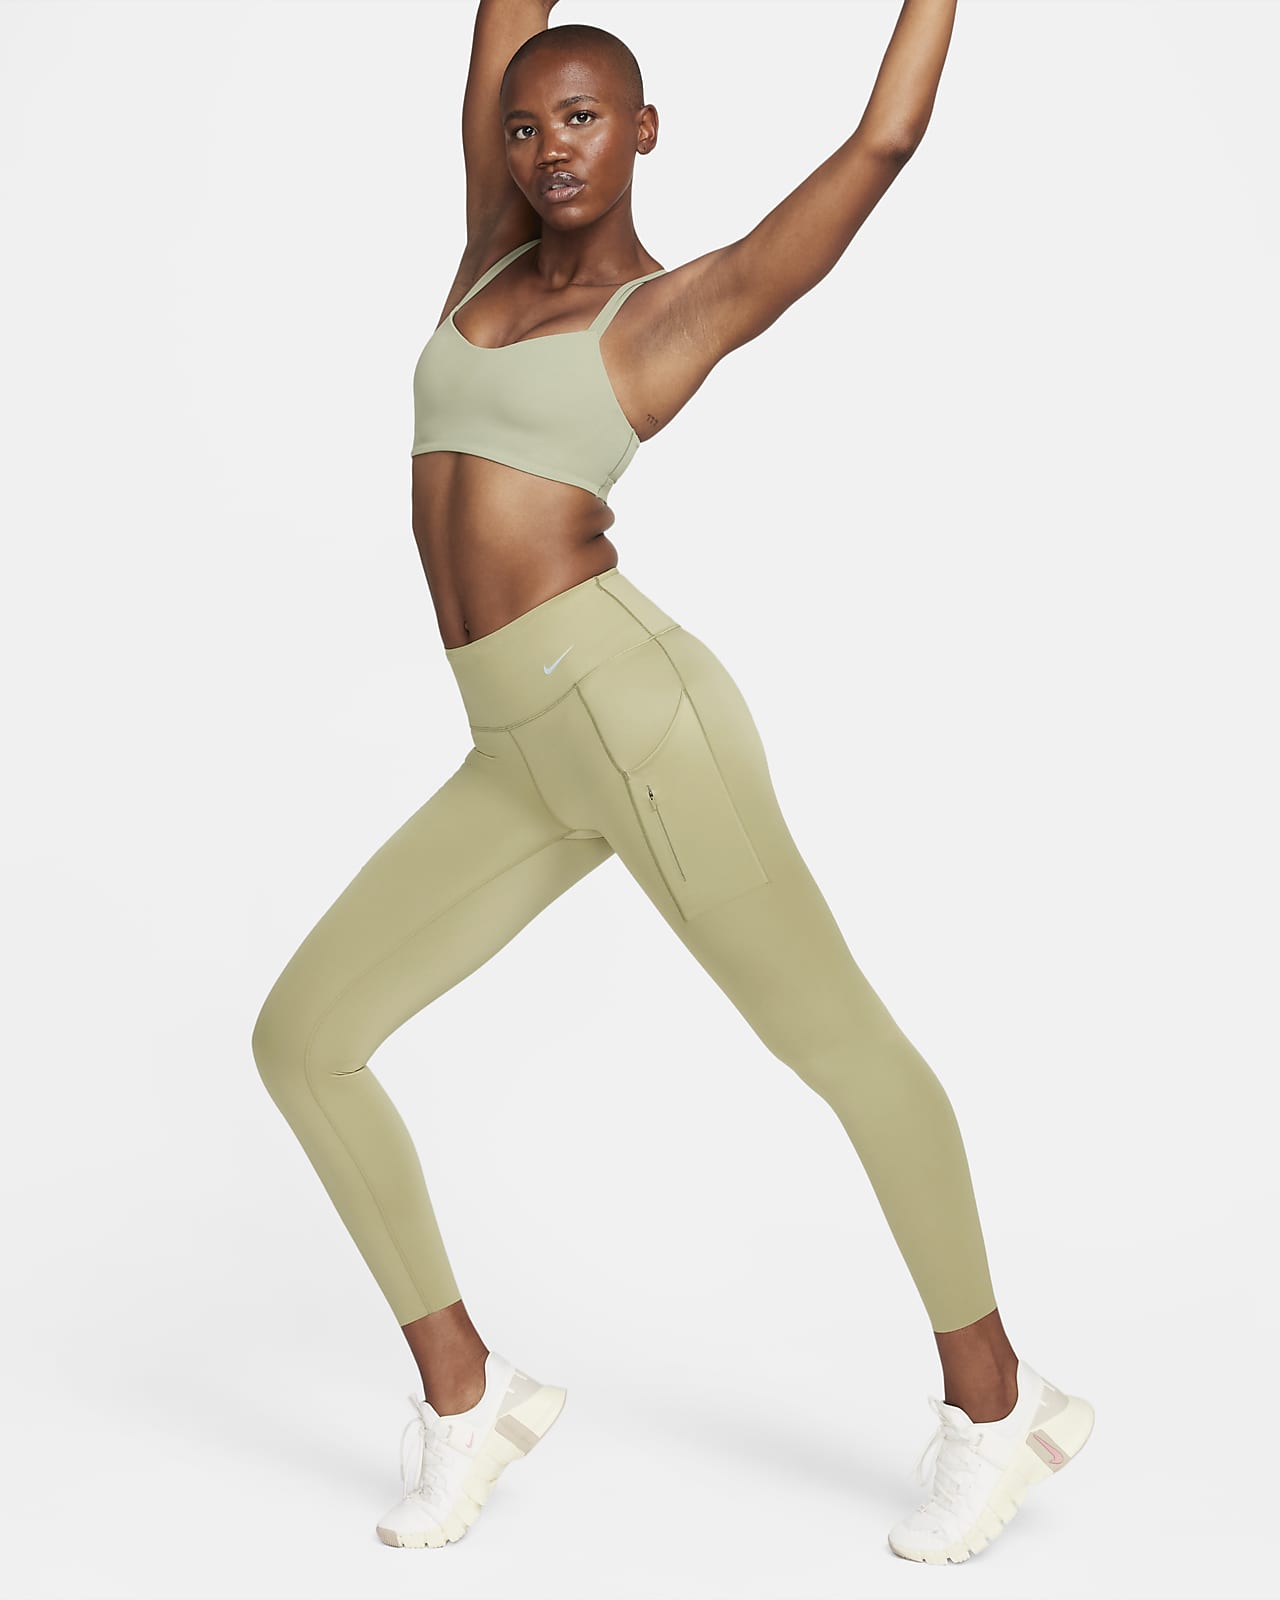 Leggings a 7/8 a vita media con tasche e sostegno elevato Nike Go – Donna